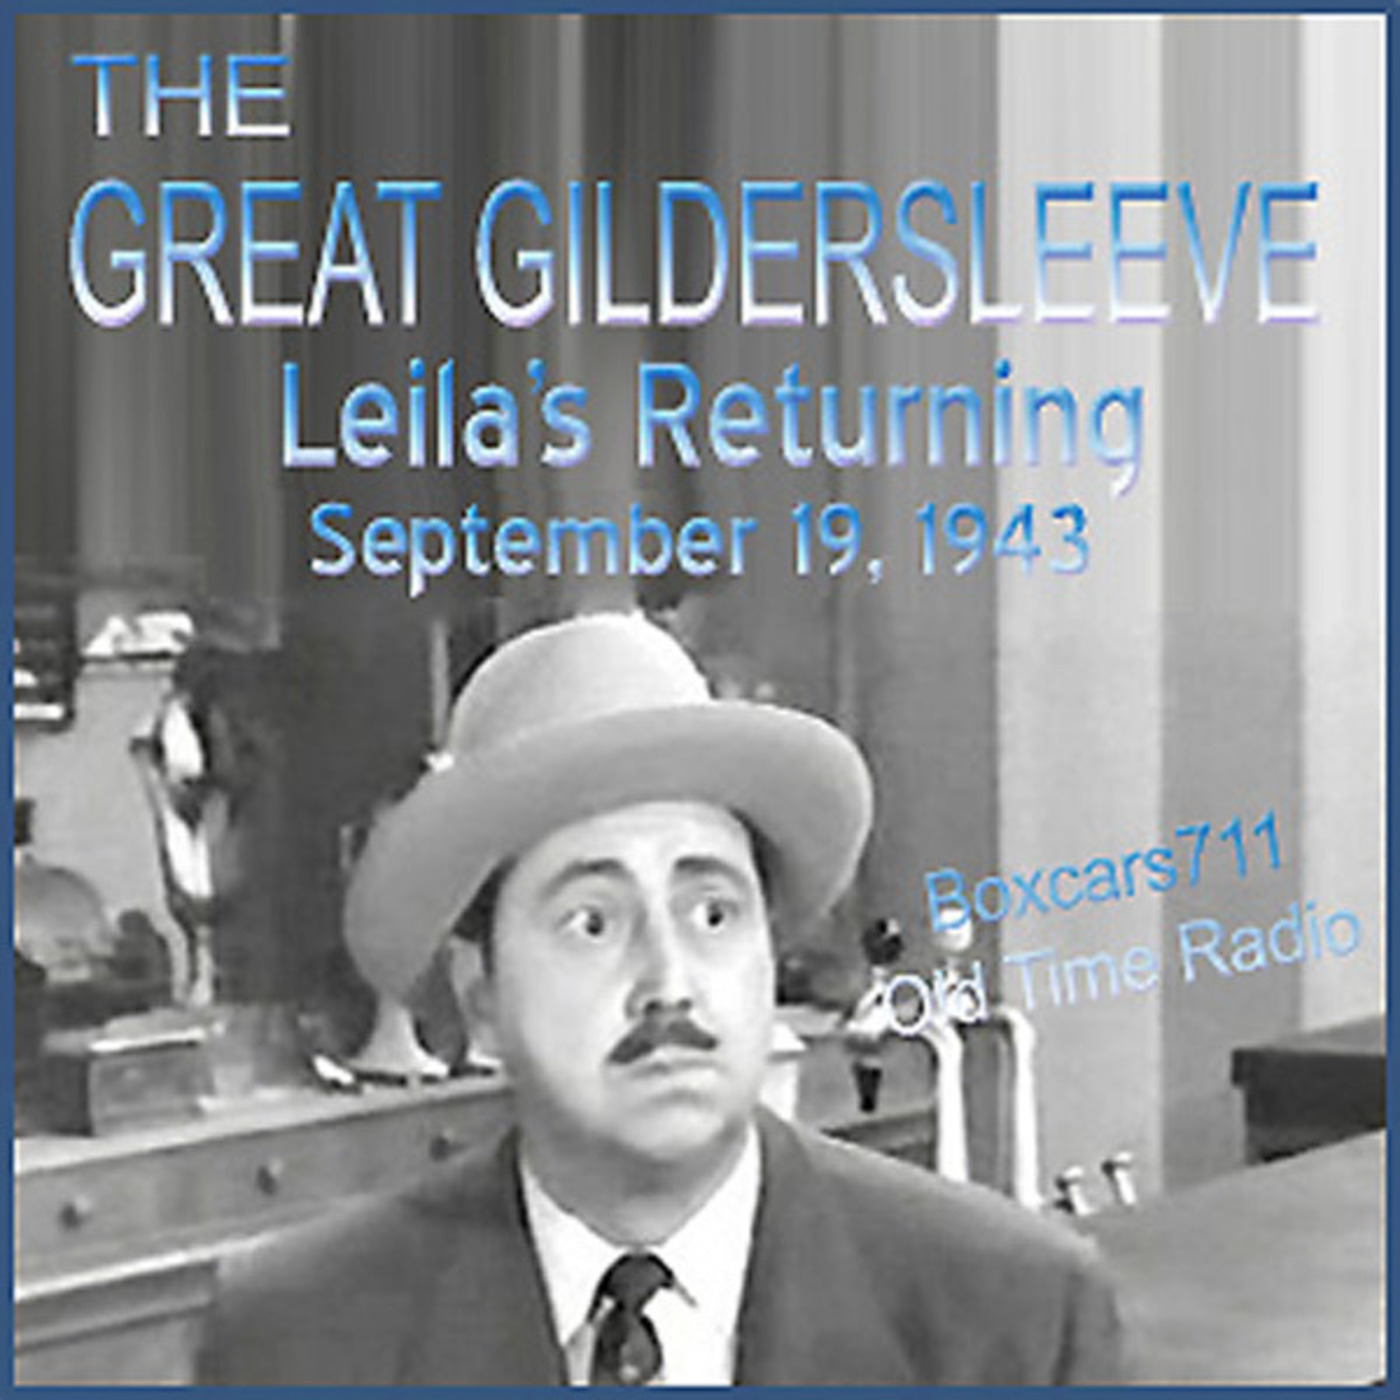 Episode 9513: The Great Gildersleeve - 